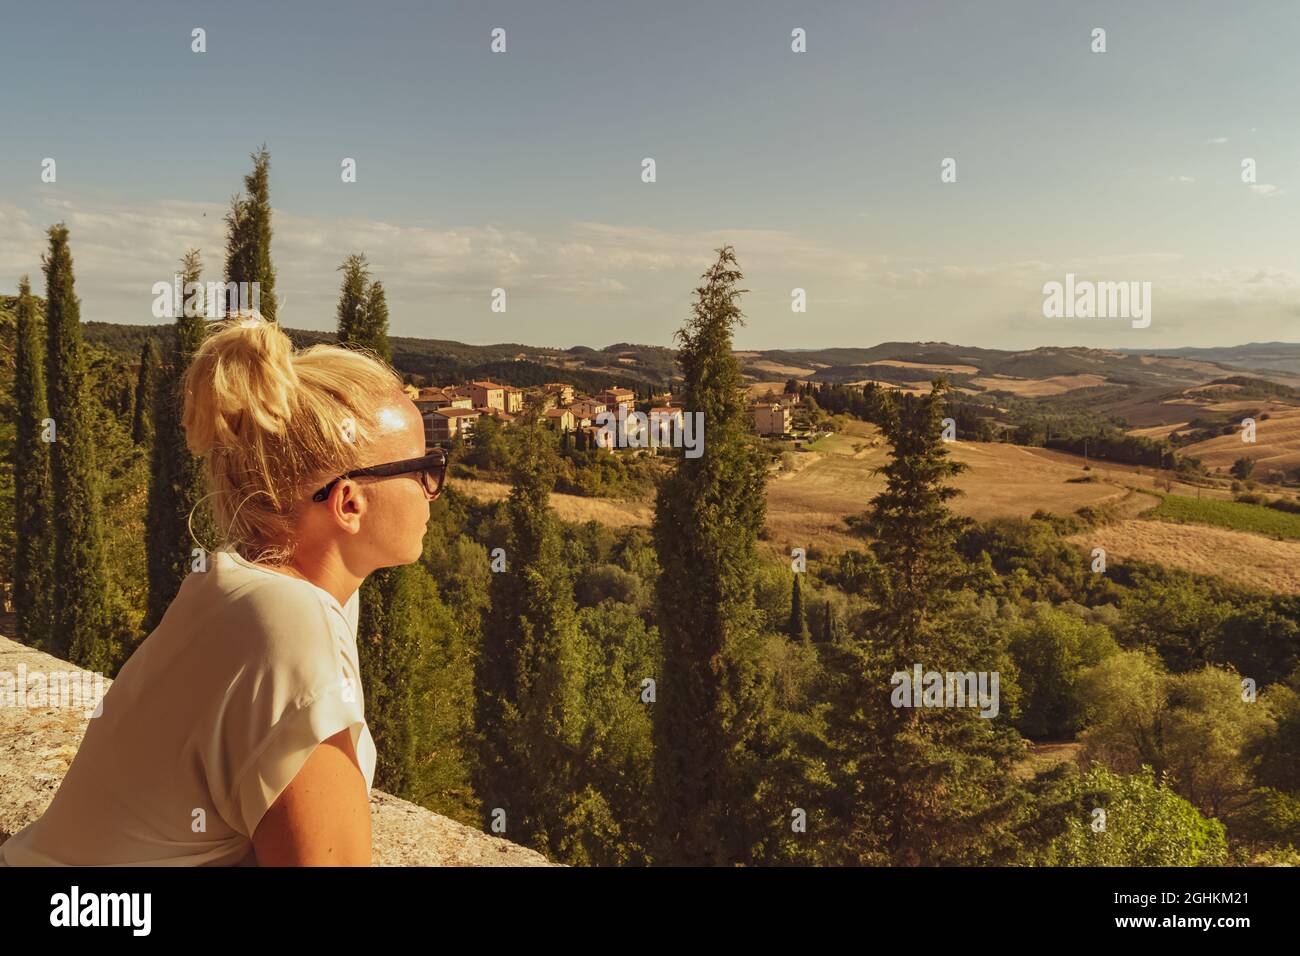 Toscane, Italie. Belle fille blonde regardant un paysage typiquement toscan. Une image impressionnante pour l'usage que vous voulez en faire. Banque D'Images